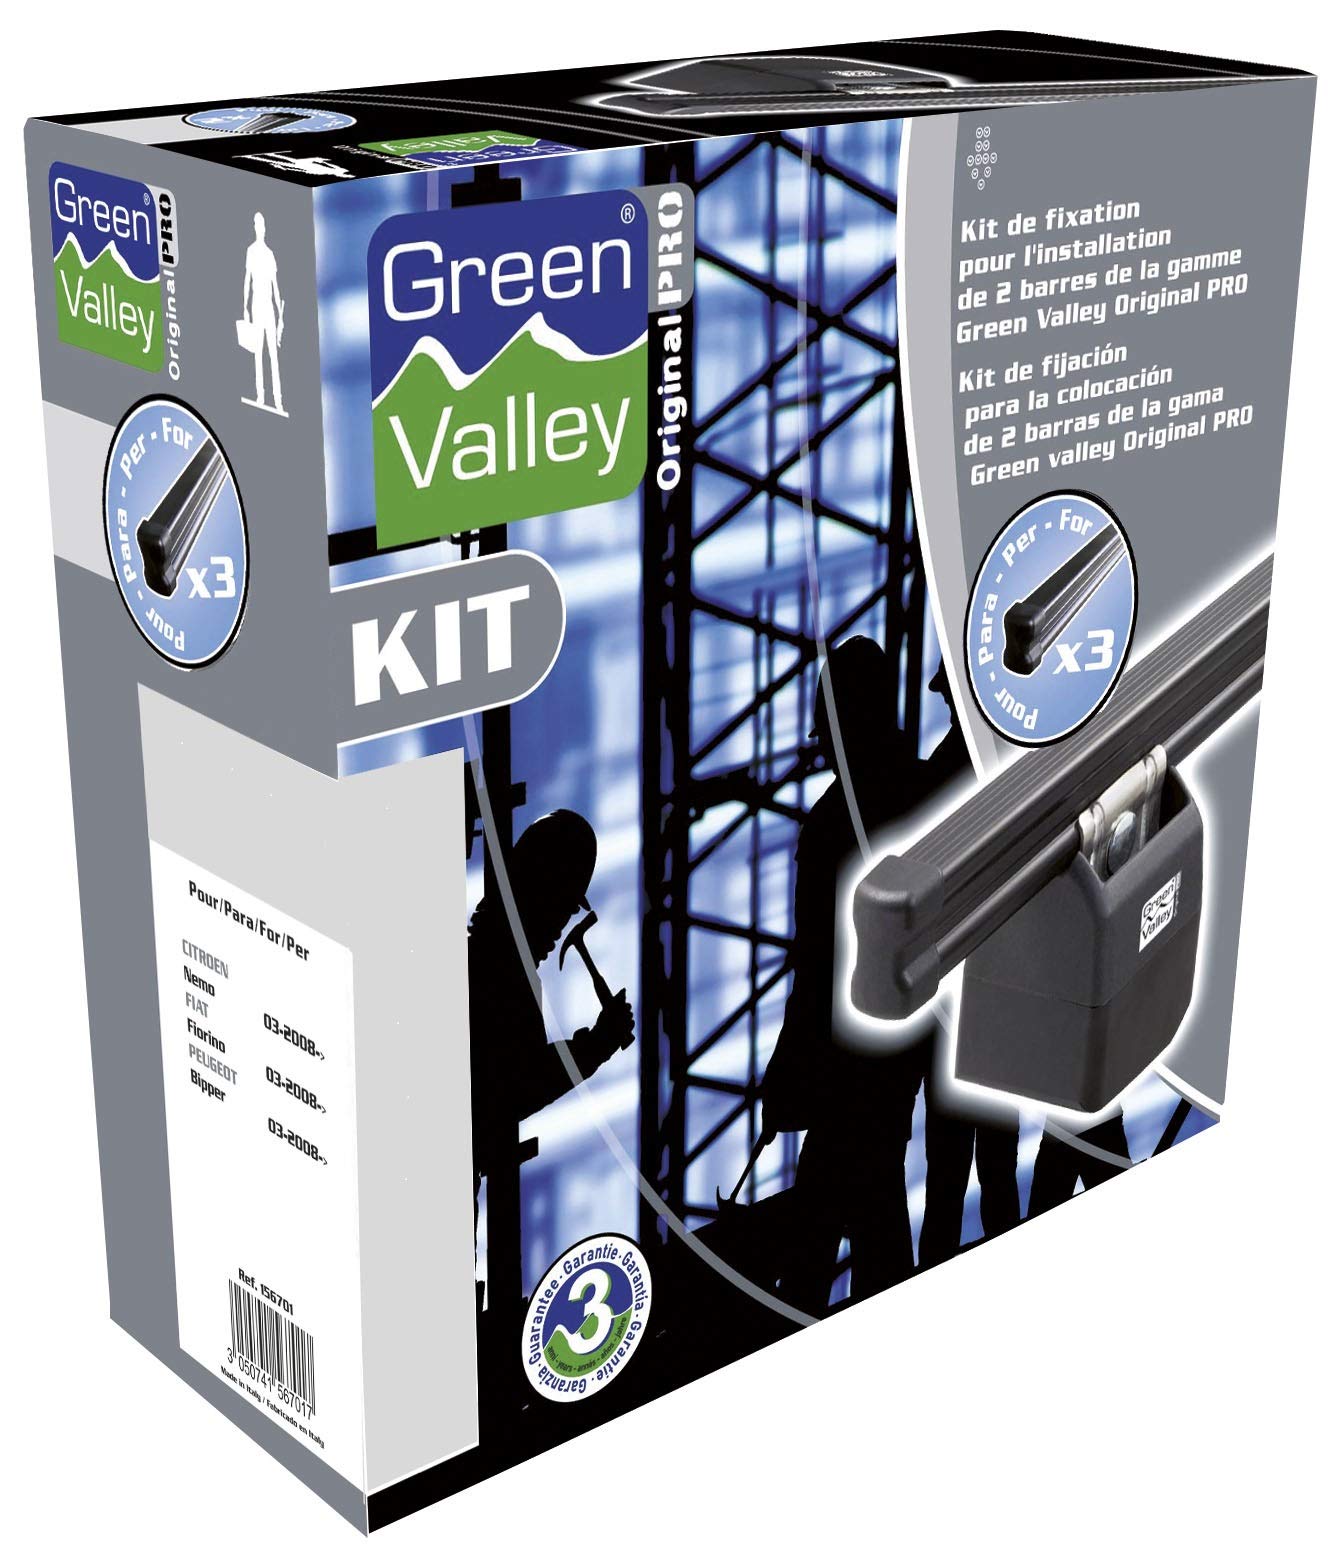 AURILIS Group - FLAURAUD Green Valley - Kit Stangen Original Pro Nr. 766 2 Stangen von Green Valley